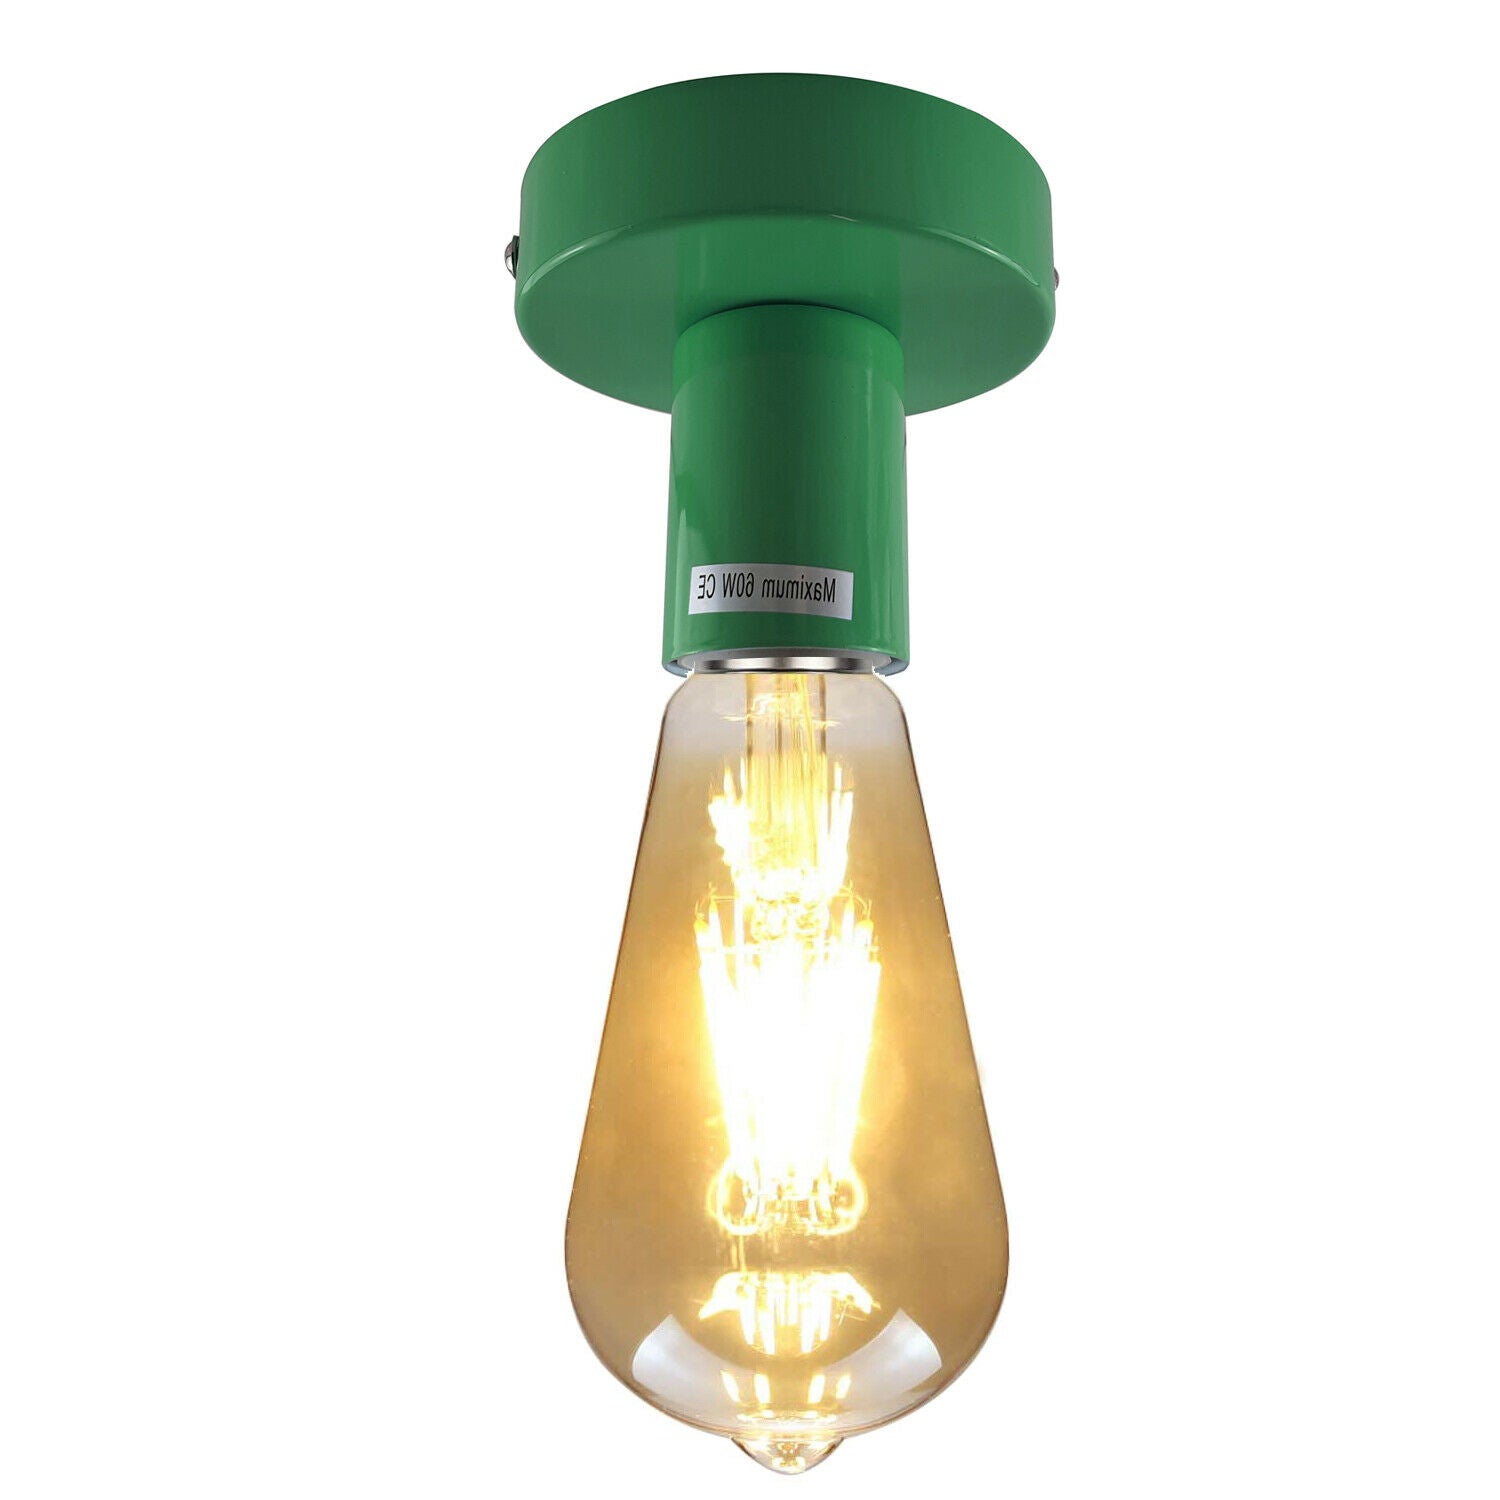 Green Flush Mount Ceiling Light Fitting~1688 - LEDSone UK Ltd